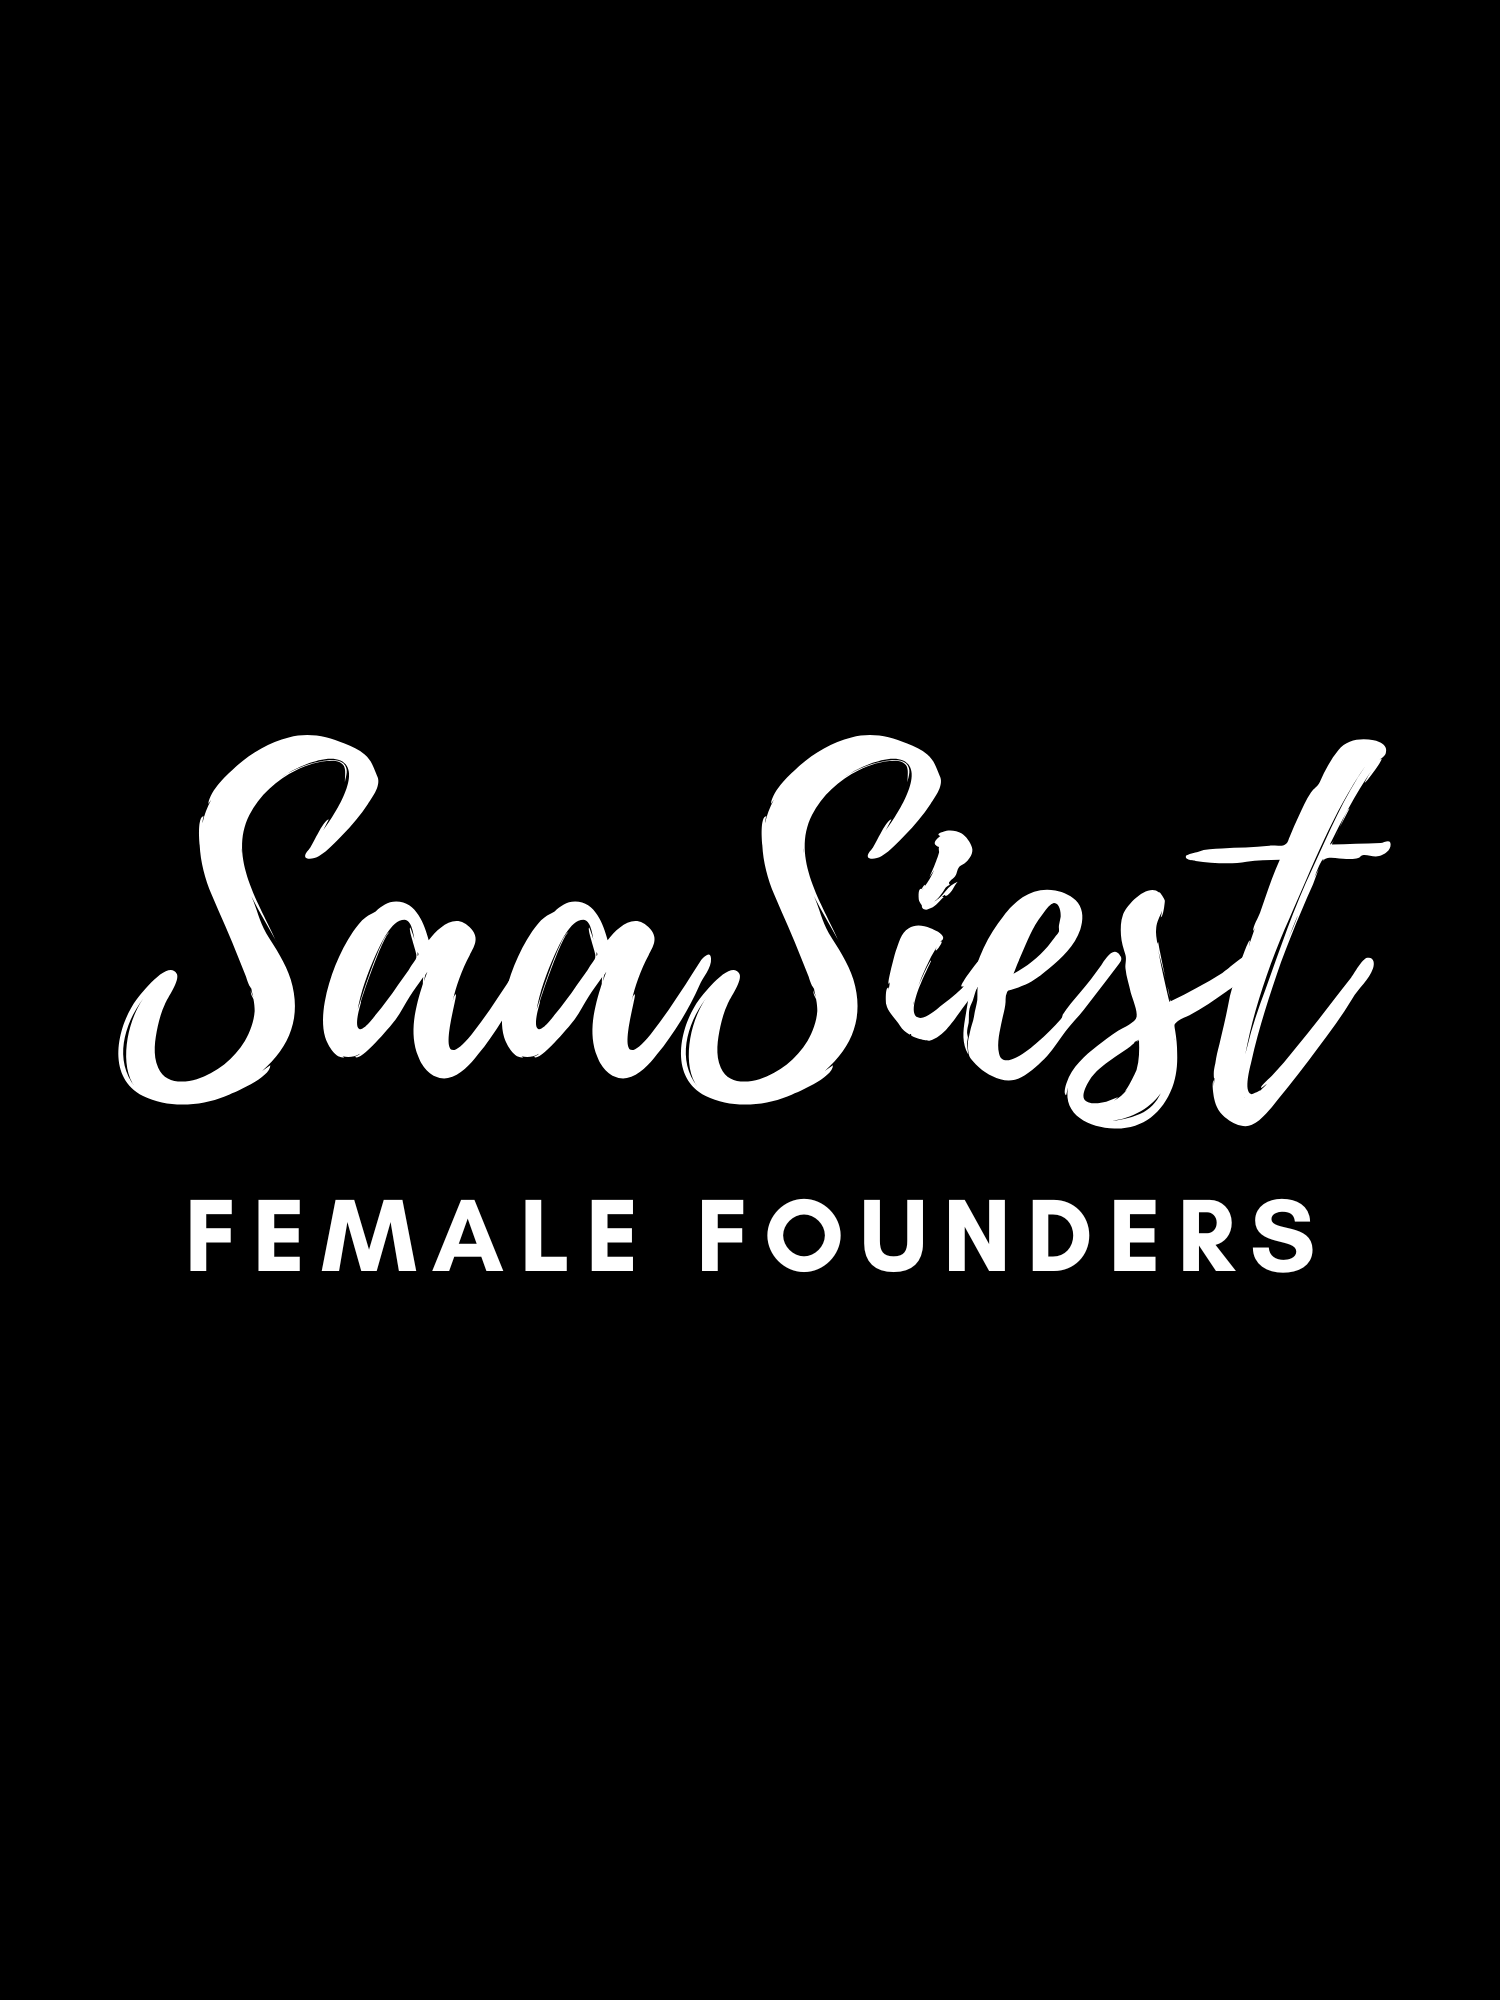 SaaSiest Female Founders